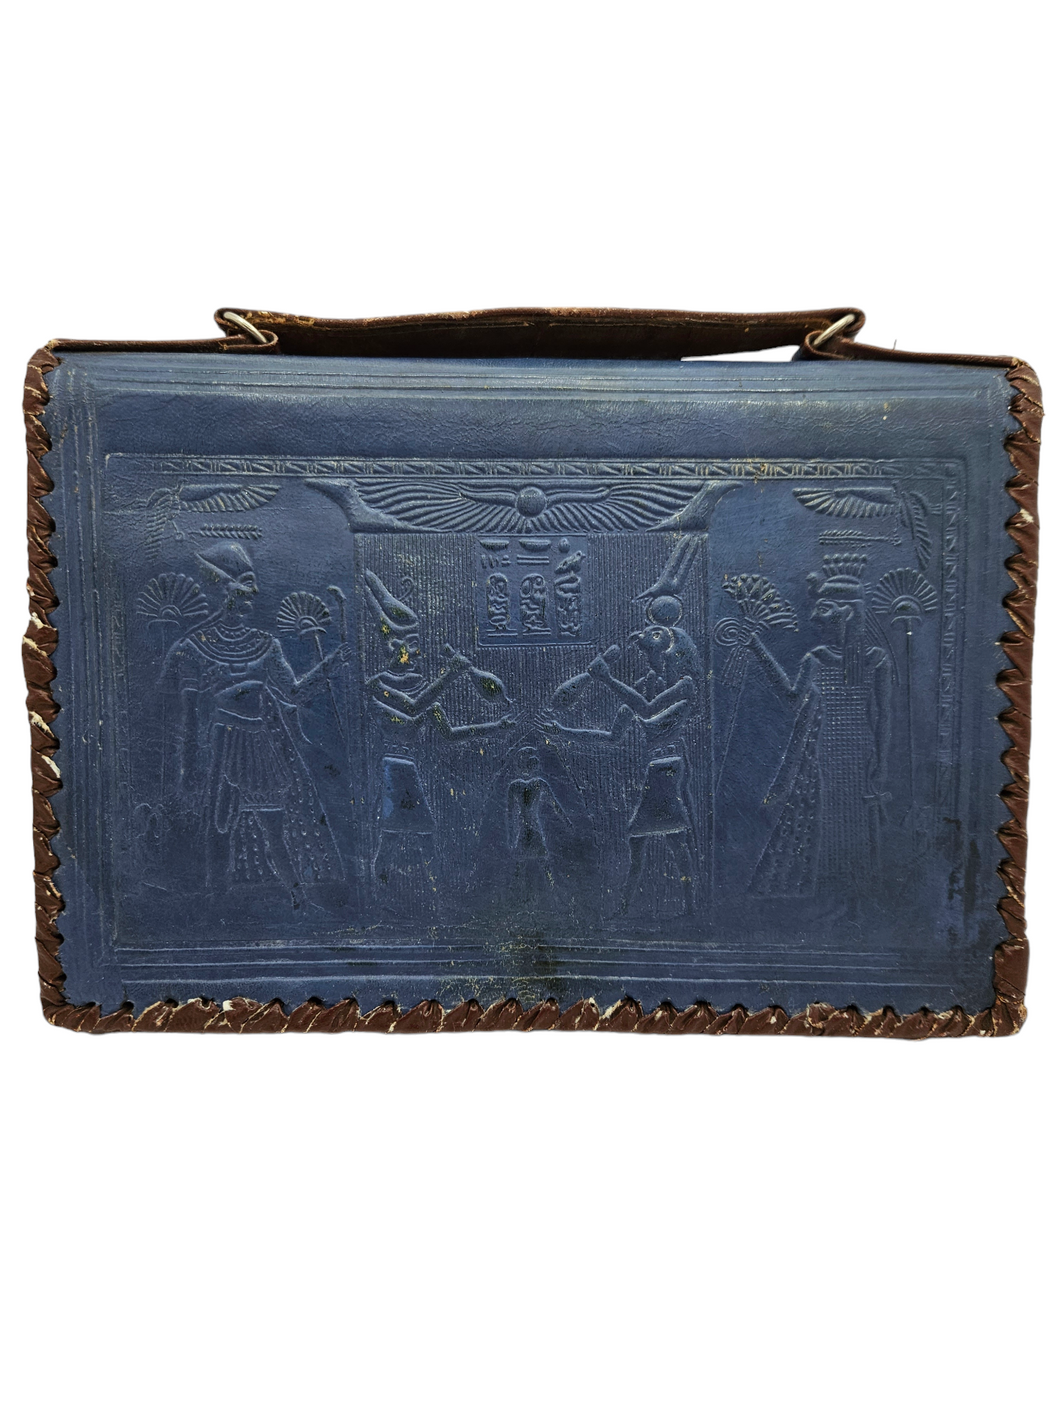 1940s Blue and Brown Egyptian Tourist Bag